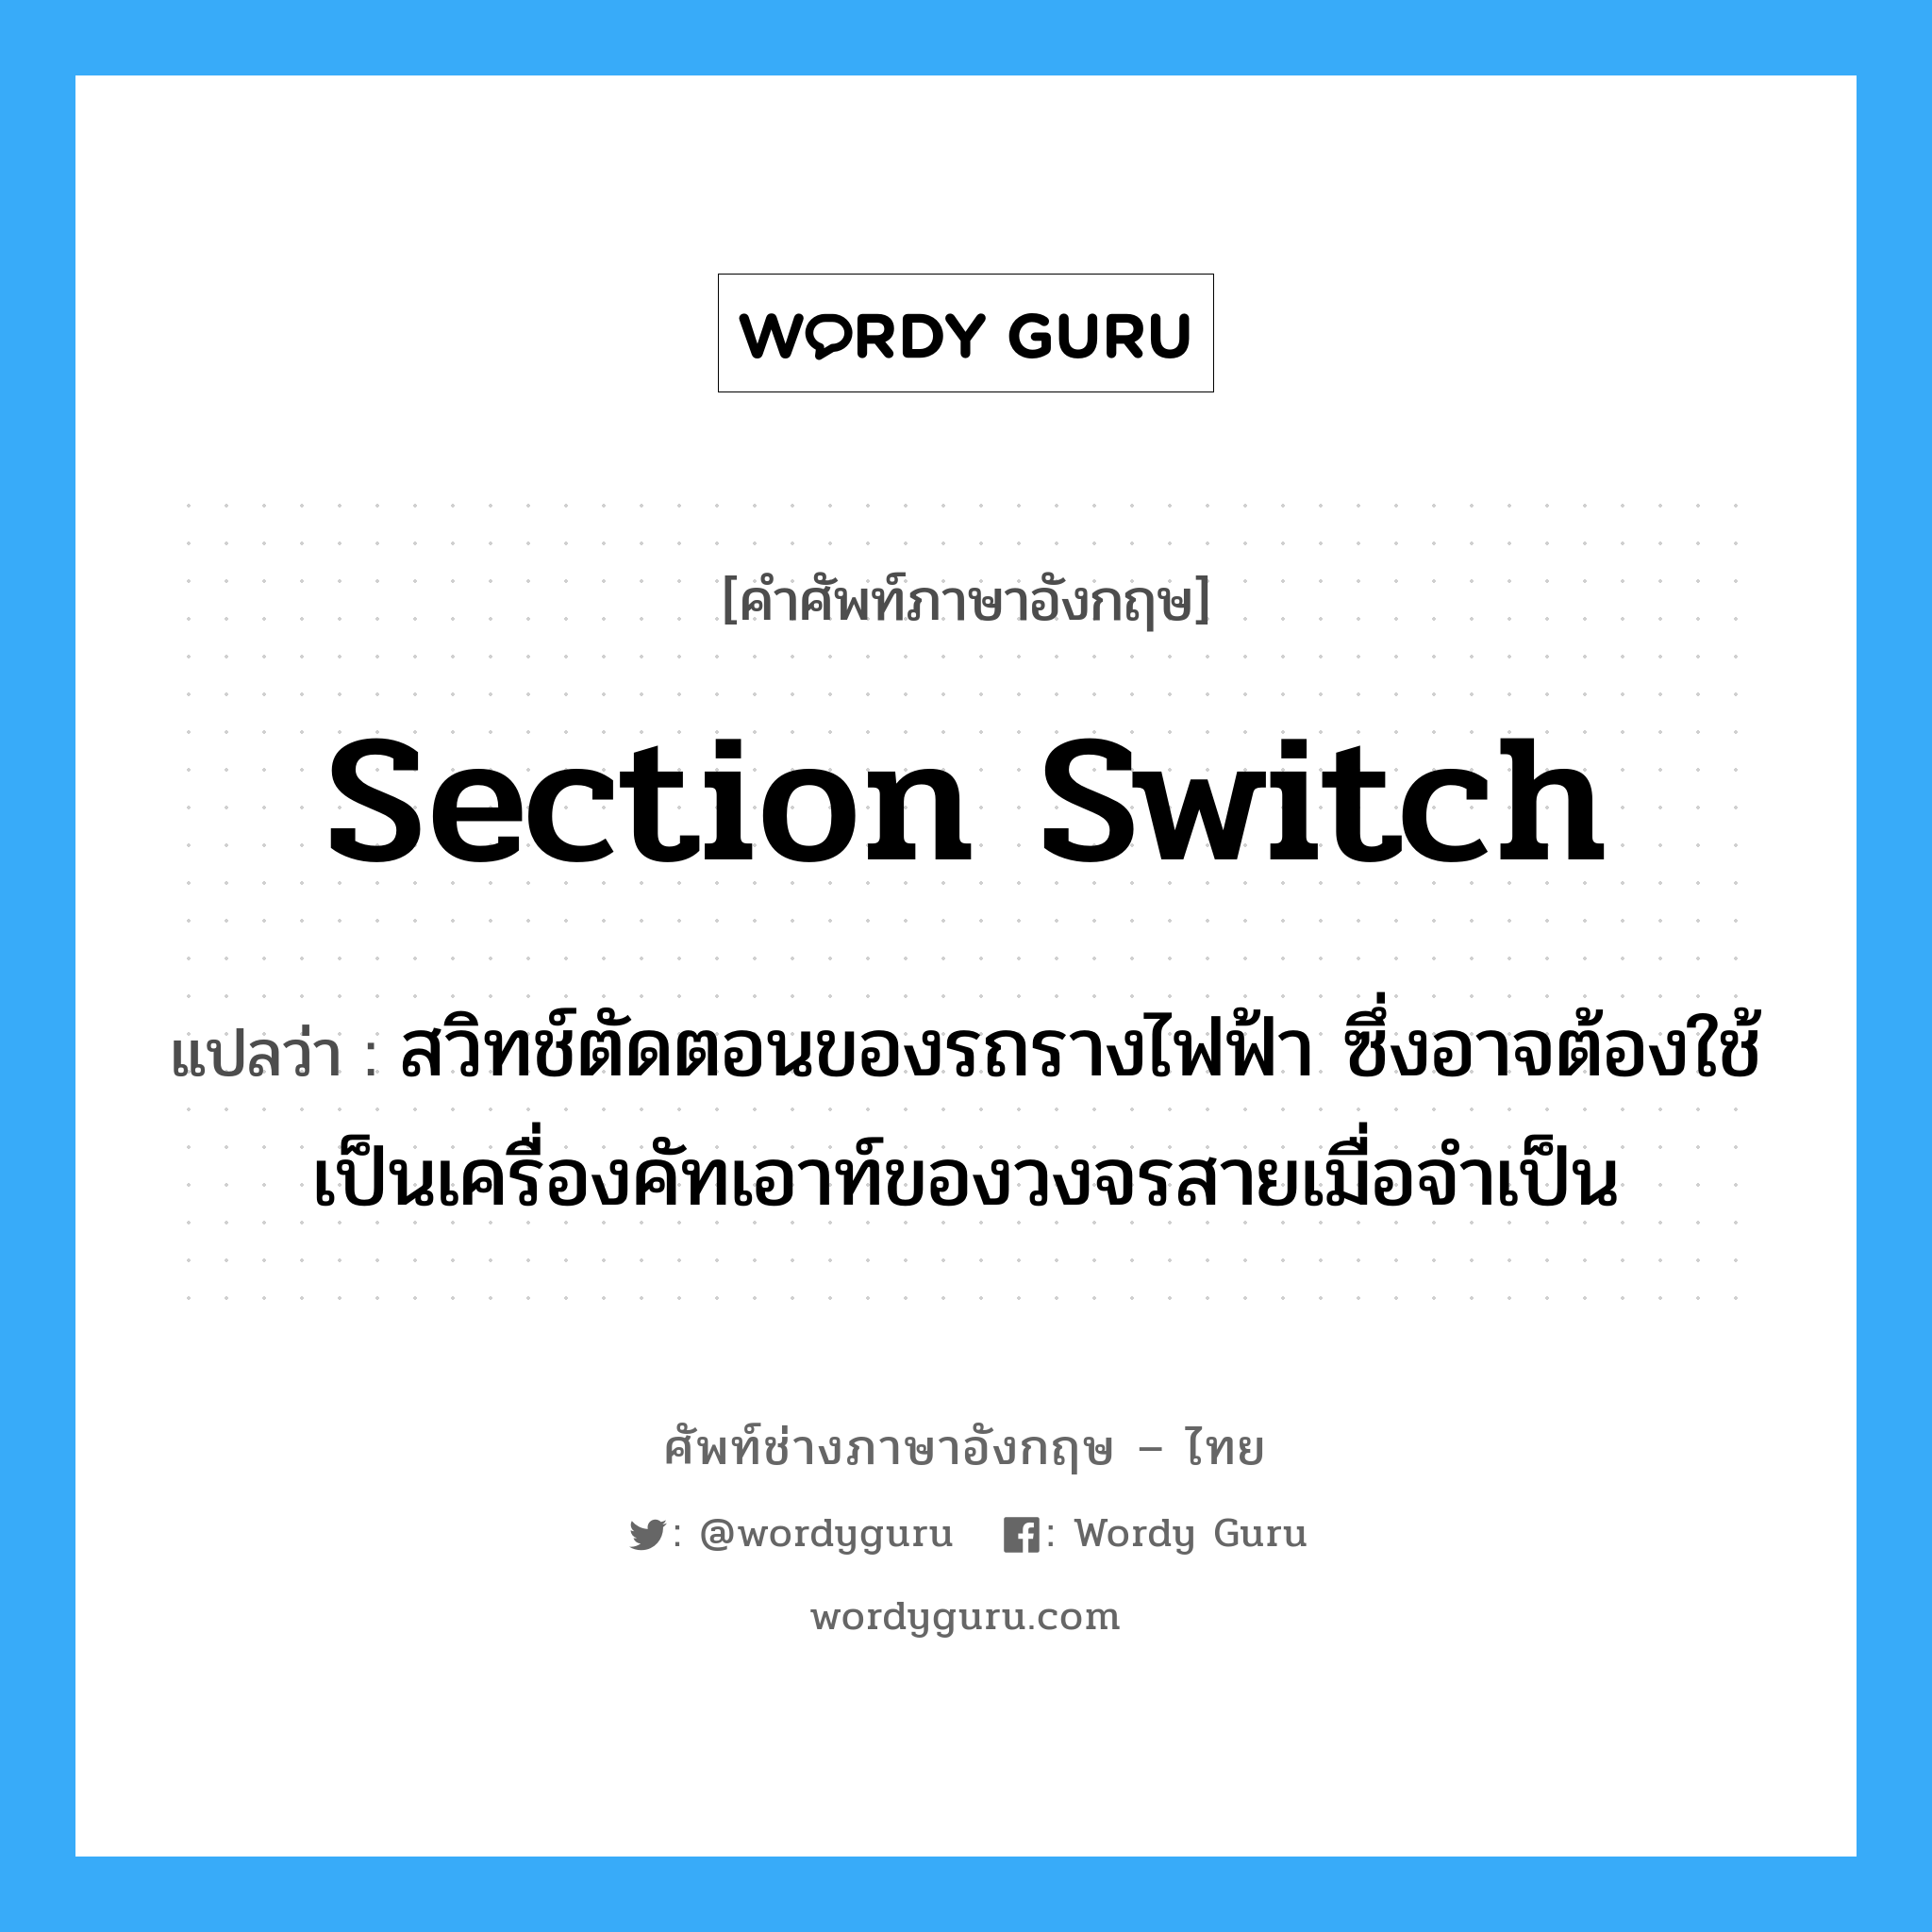 section switch แปลว่า?, คำศัพท์ช่างภาษาอังกฤษ - ไทย section switch คำศัพท์ภาษาอังกฤษ section switch แปลว่า สวิทช์ตัดตอนของรถรางไฟฟ้า ซึ่งอาจต้องใช้เป็นเครื่องคัทเอาท์ของวงจรสายเมื่อจำเป็น